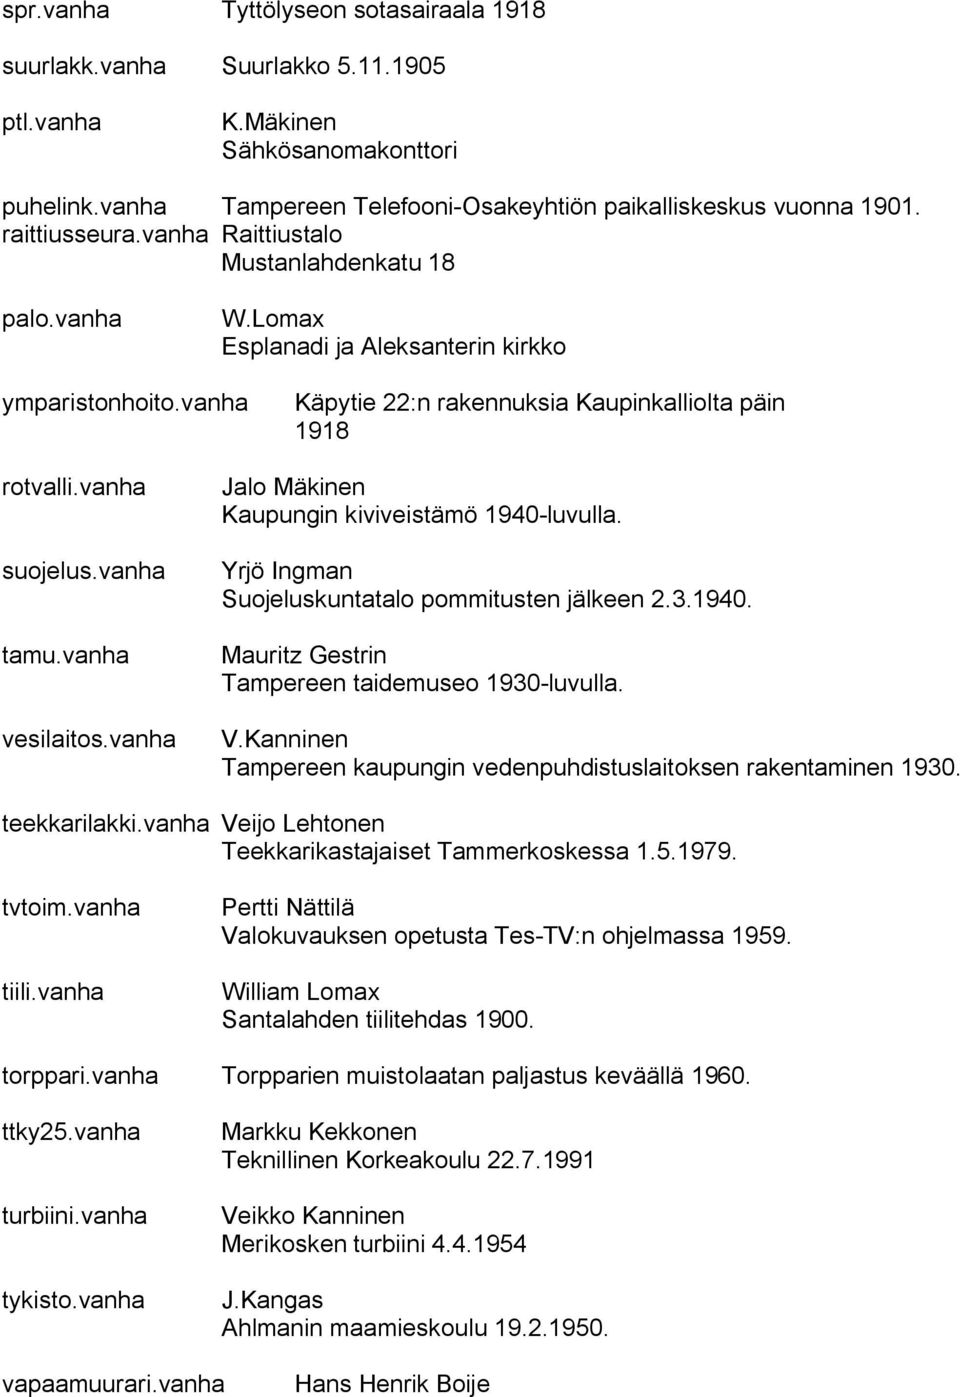 vanha suojelus.vanha tamu.vanha vesilaitos.vanha Jalo Mäkinen Kaupungin kiviveistämö 1940 luvulla. Yrjö Ingman Suojeluskuntatalo pommitusten jälkeen 2.3.1940. Mauritz Gestrin Tampereen taidemuseo 1930 luvulla.